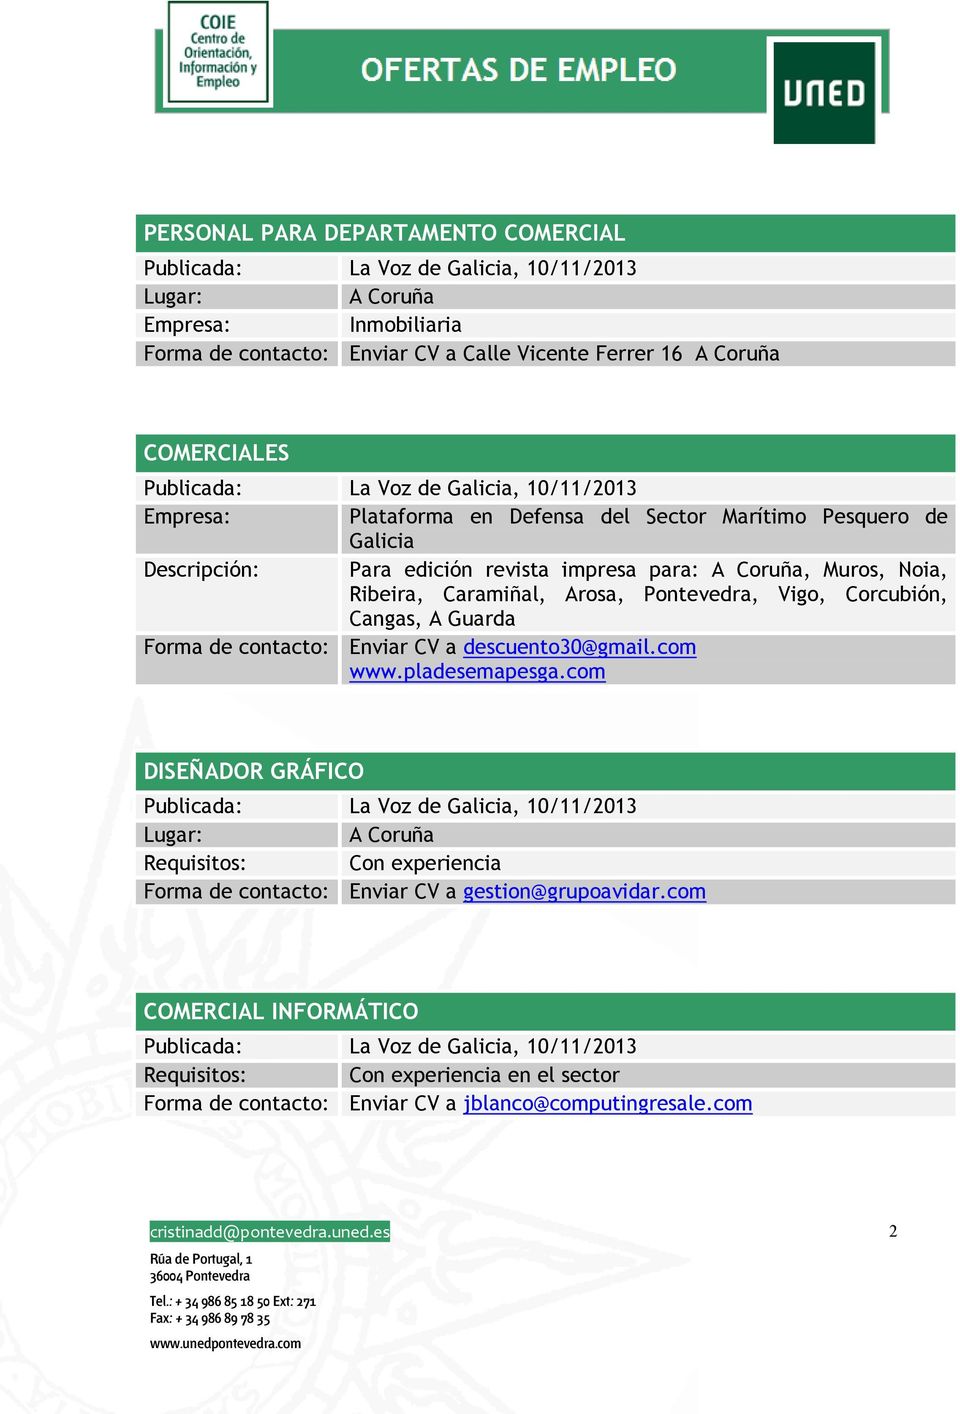 Corcubión, Cangas, A Guarda Forma de contacto: Enviar CV a descuento30@gmail.com www.pladesemapesga.